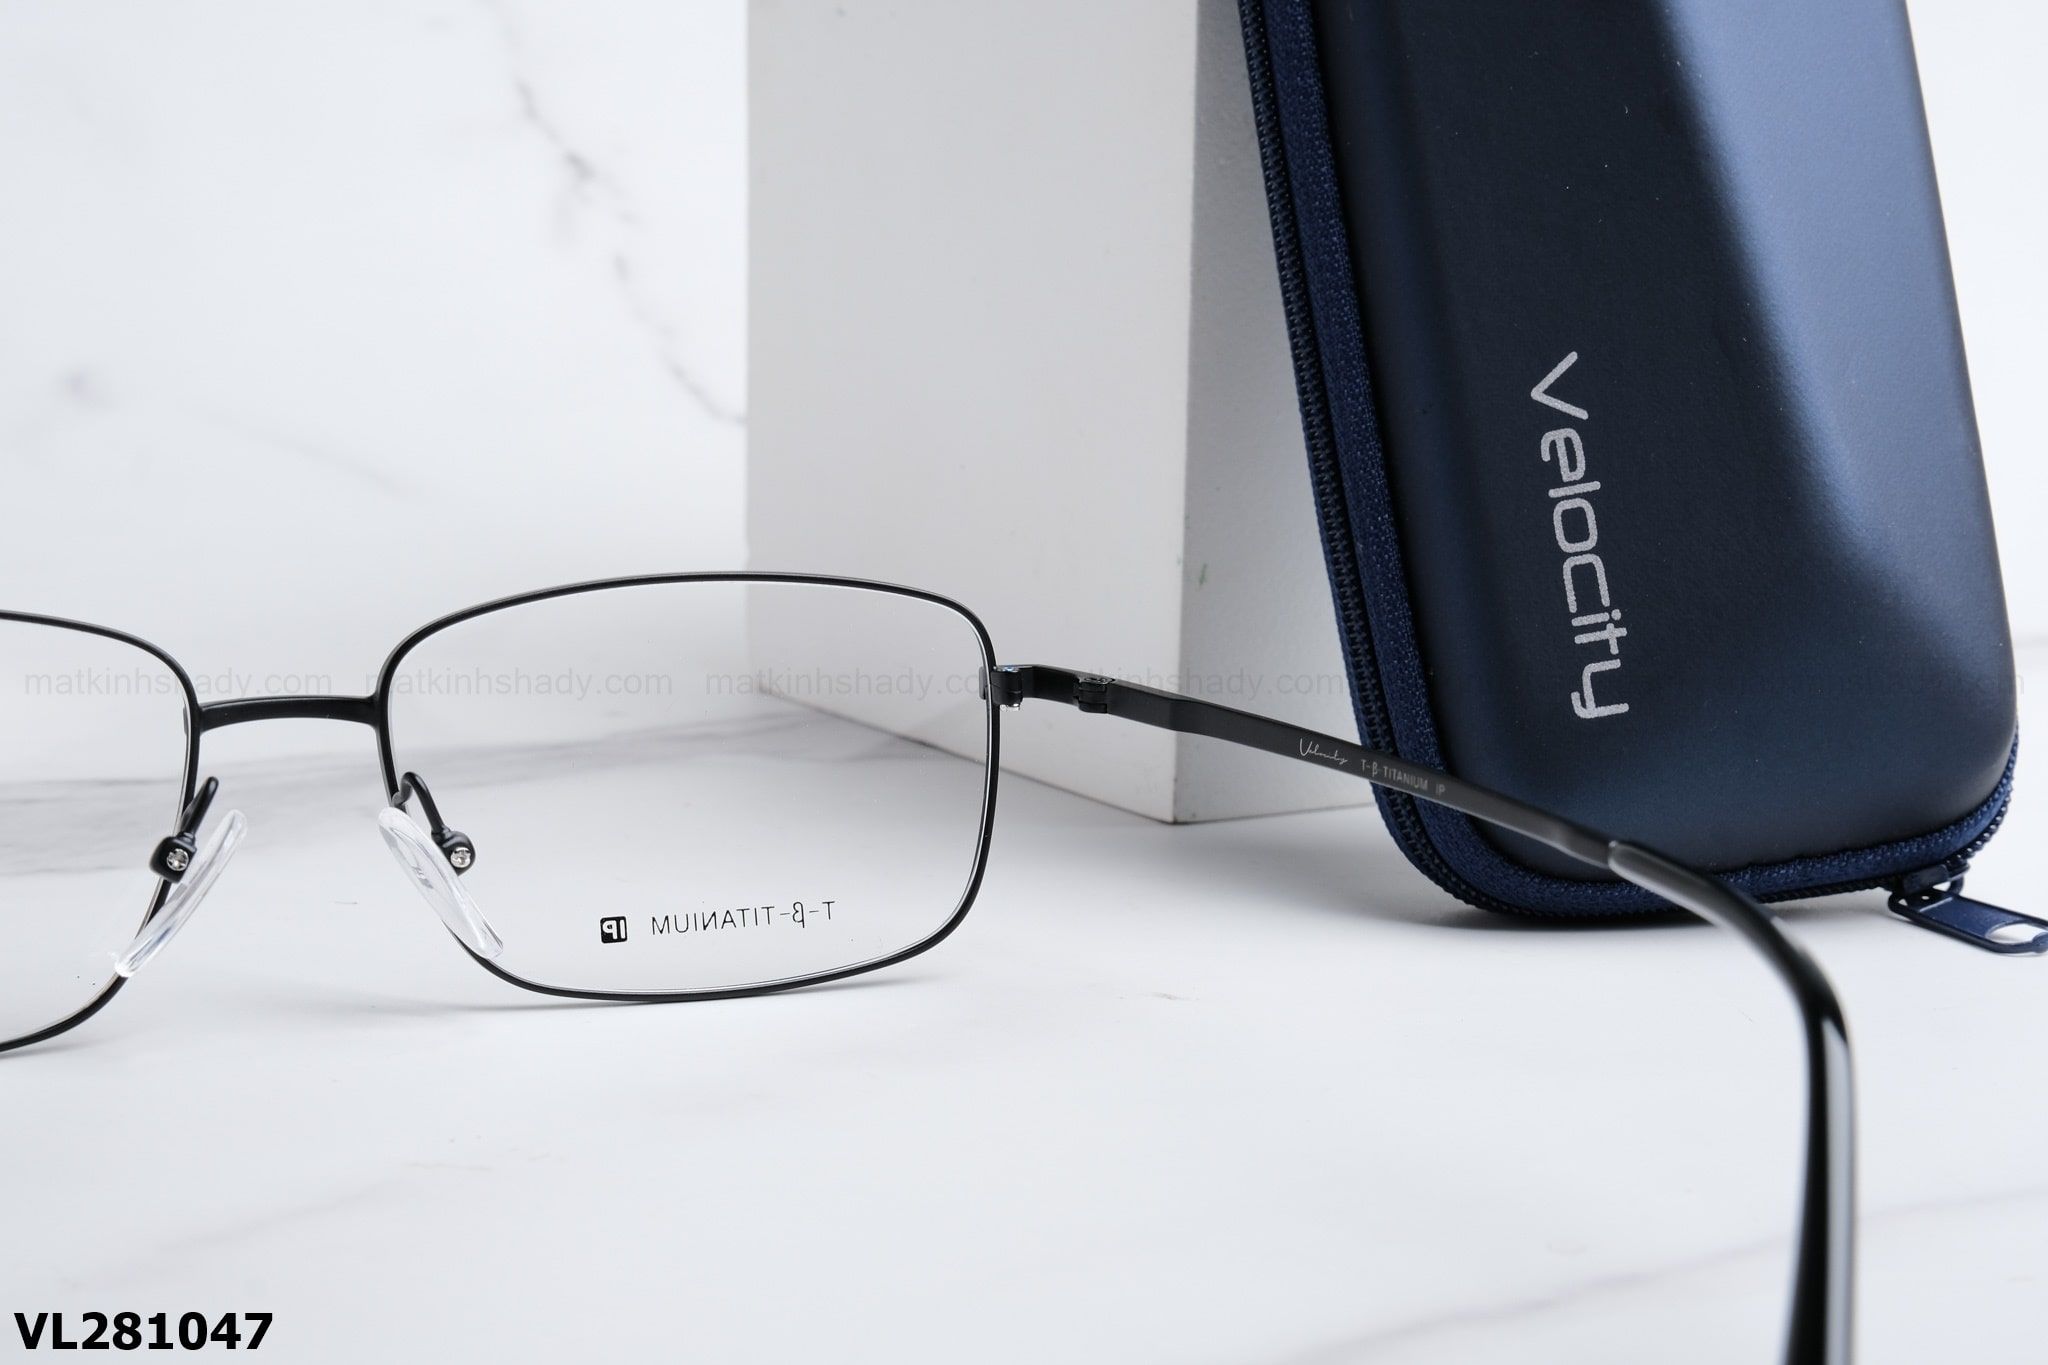  Velocity Eyewear - Glasses - VL281047 